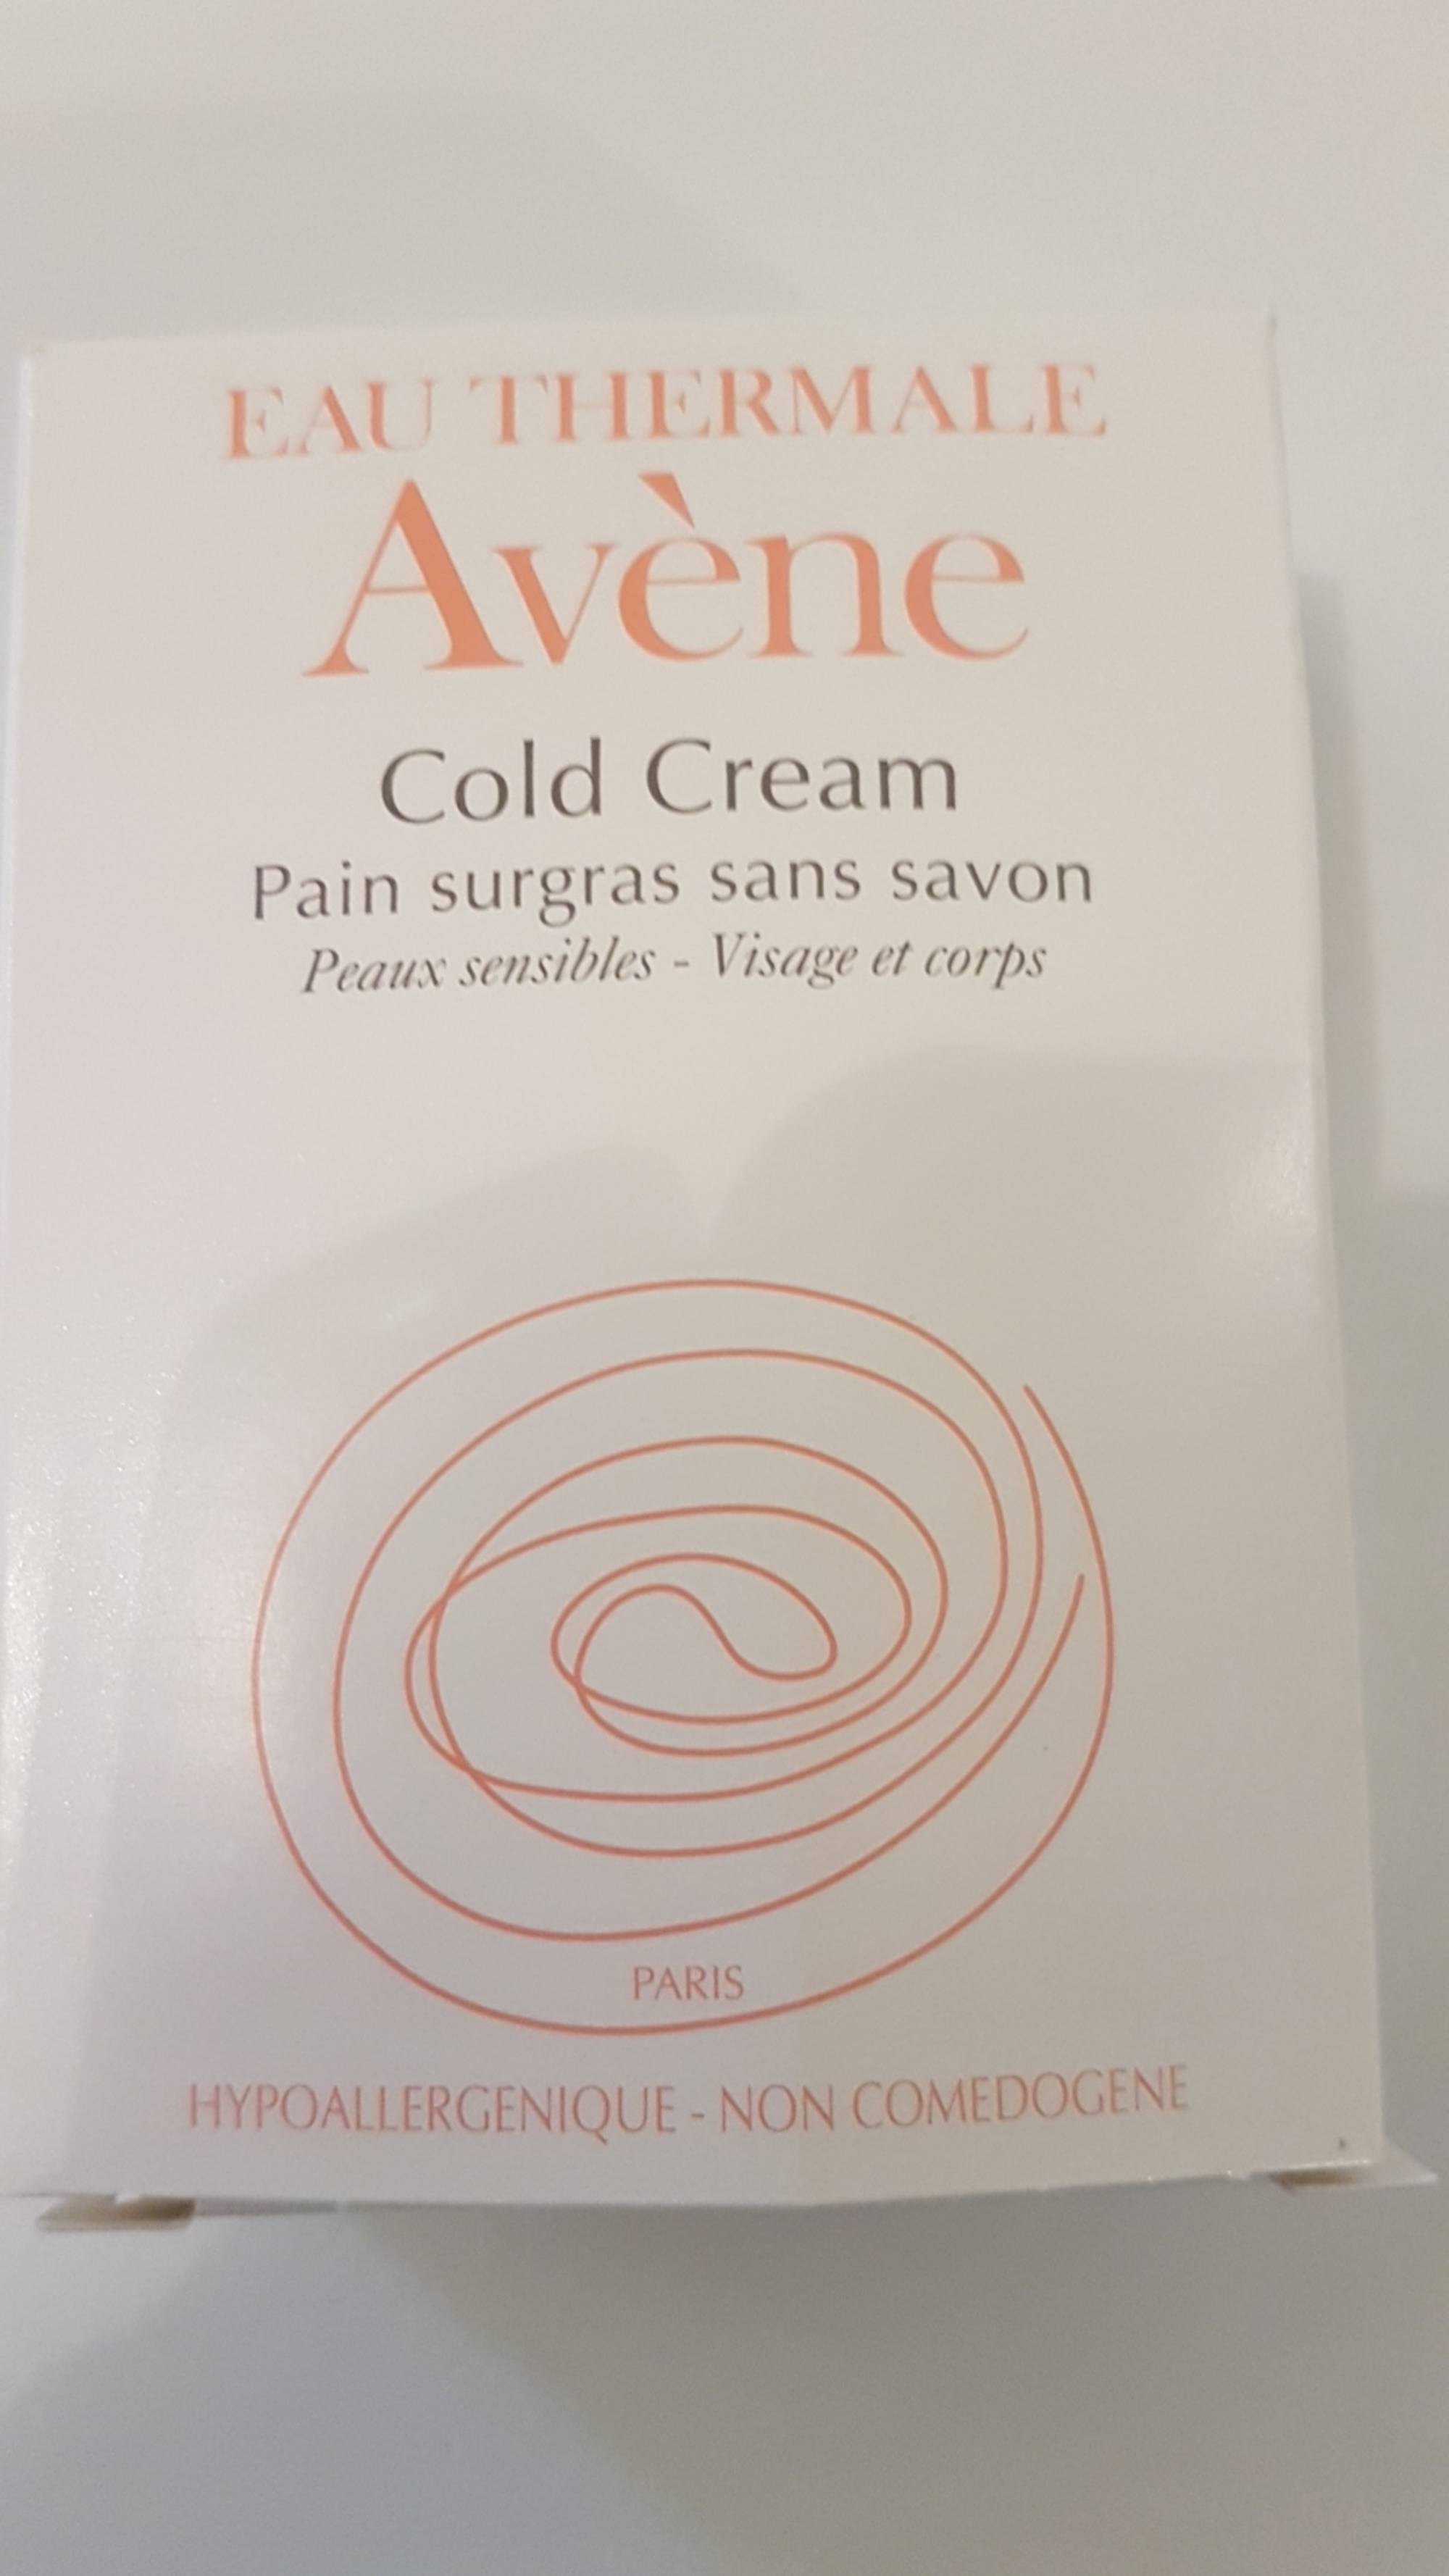 AVÈNE - Cold cream - Pain surgras sans savon